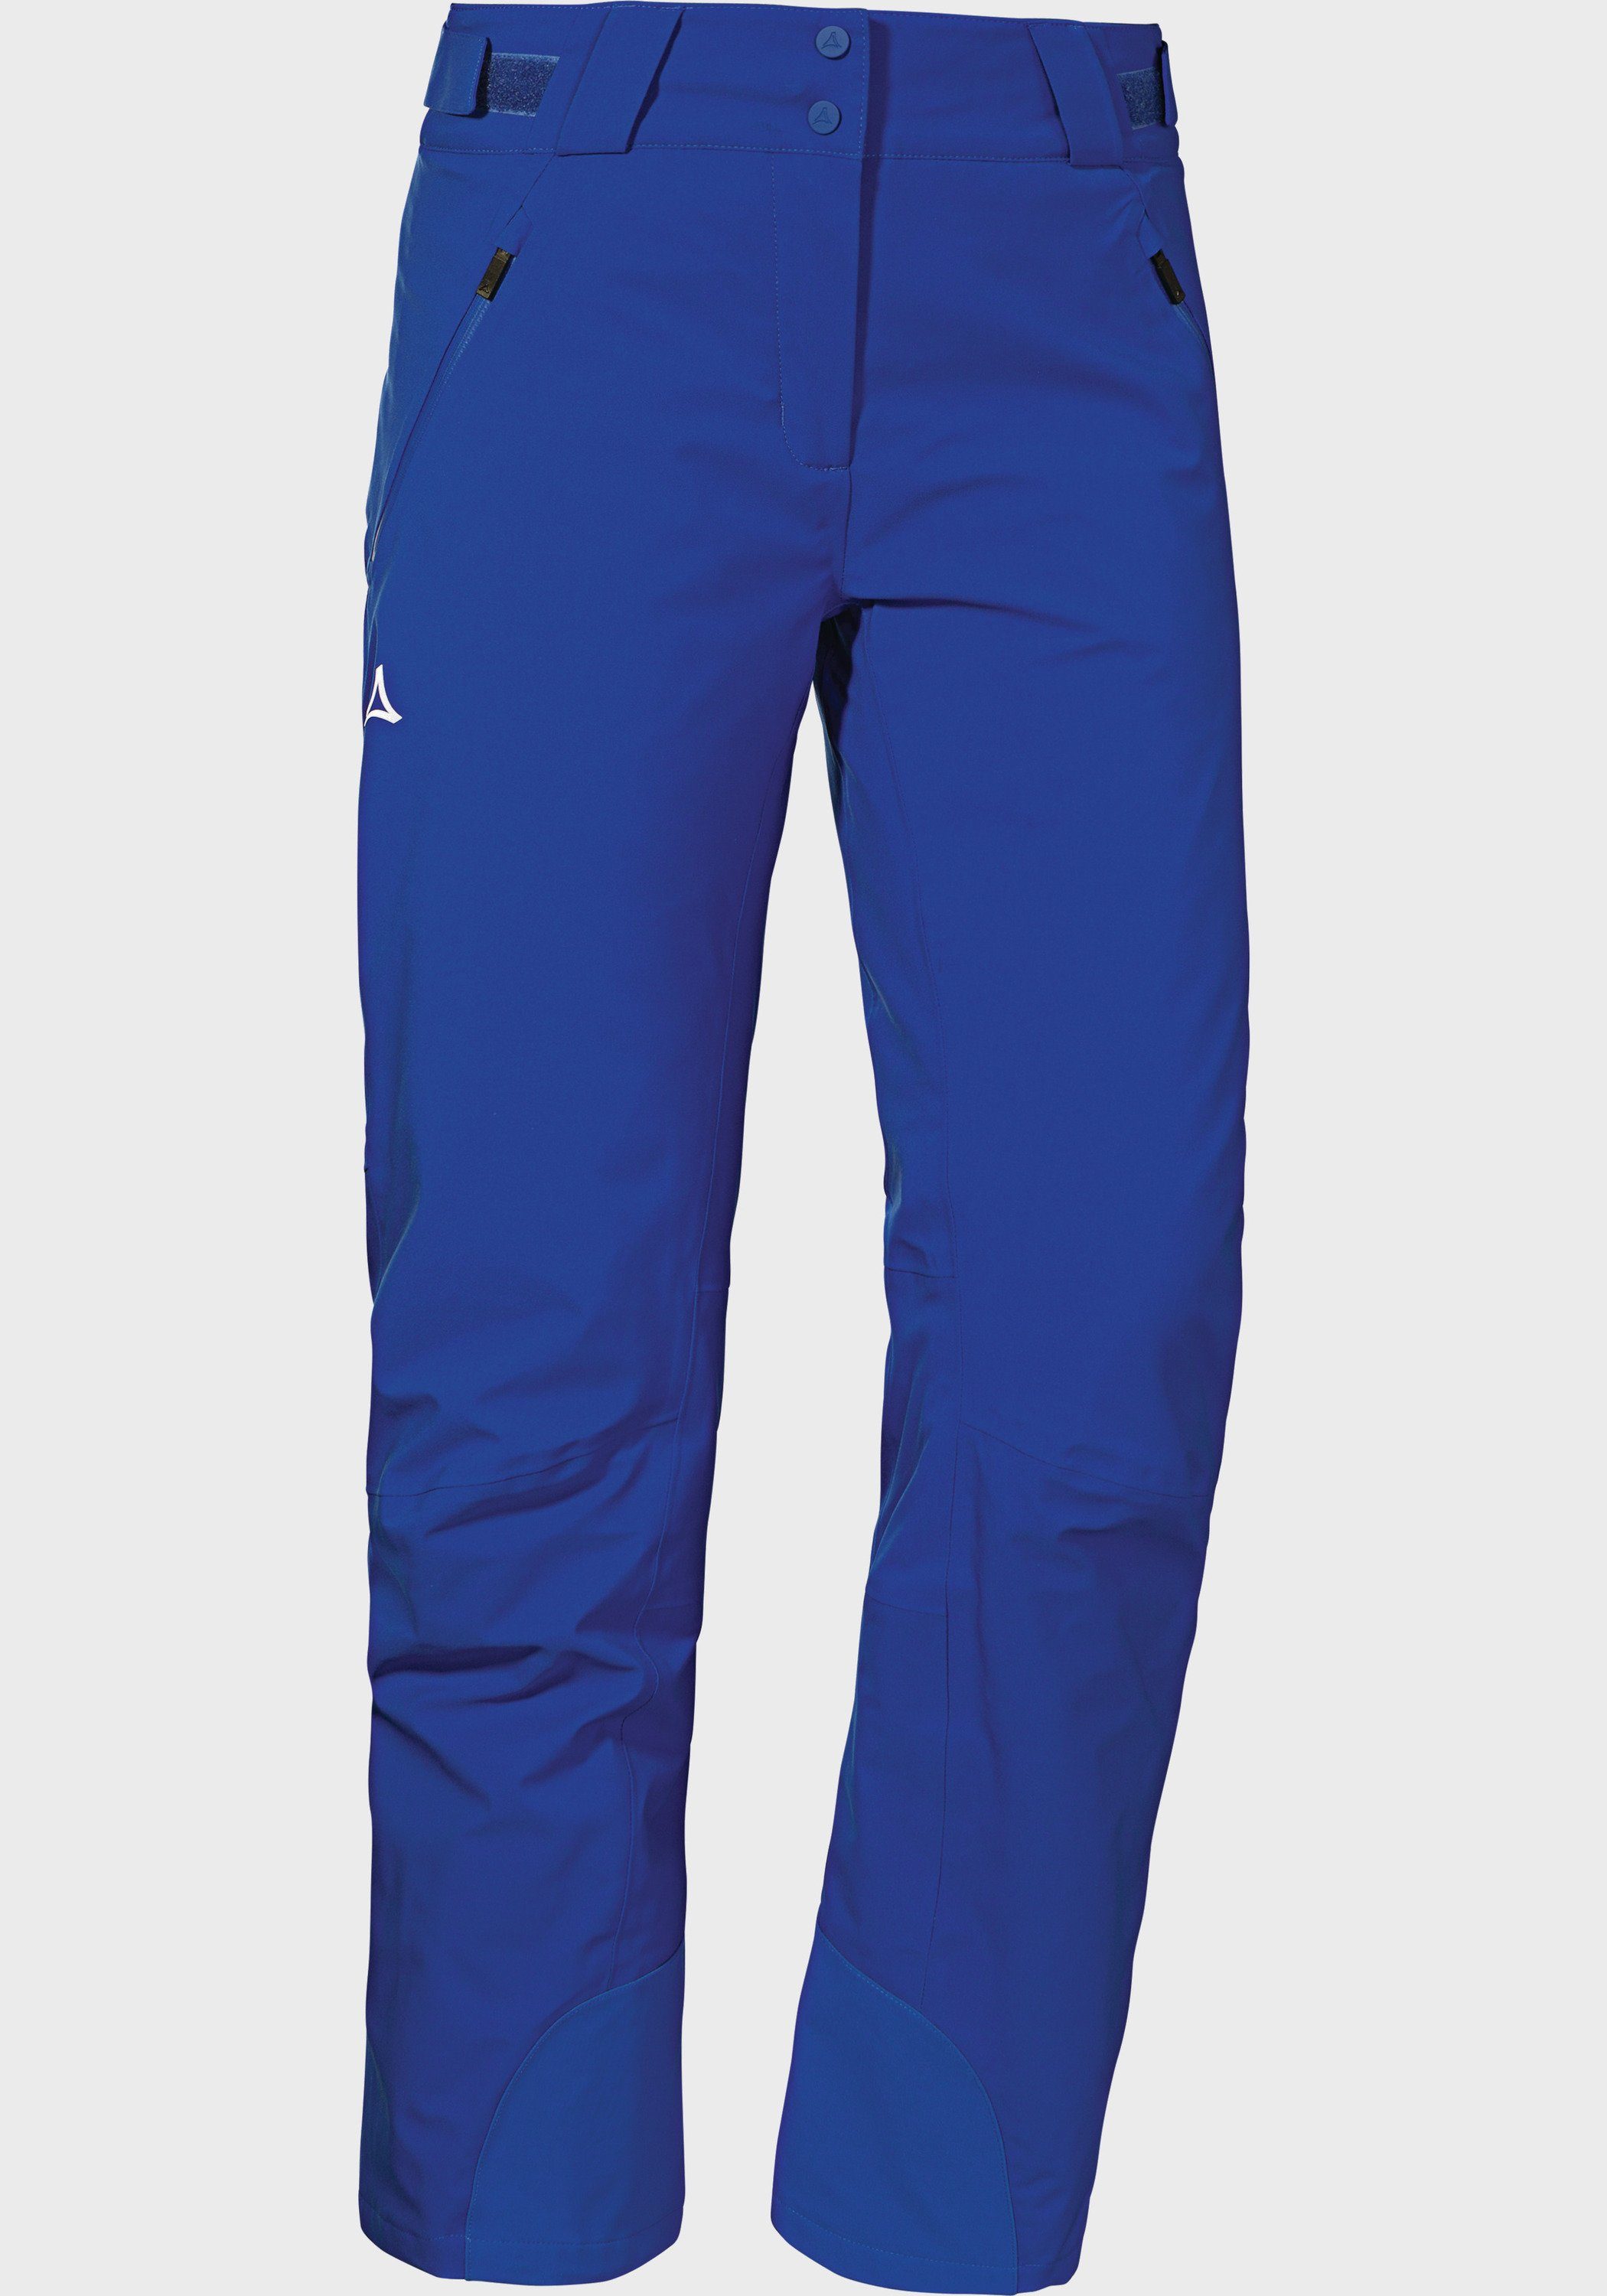 Schöffel blau Outdoorhose Pants L Weissach Ski